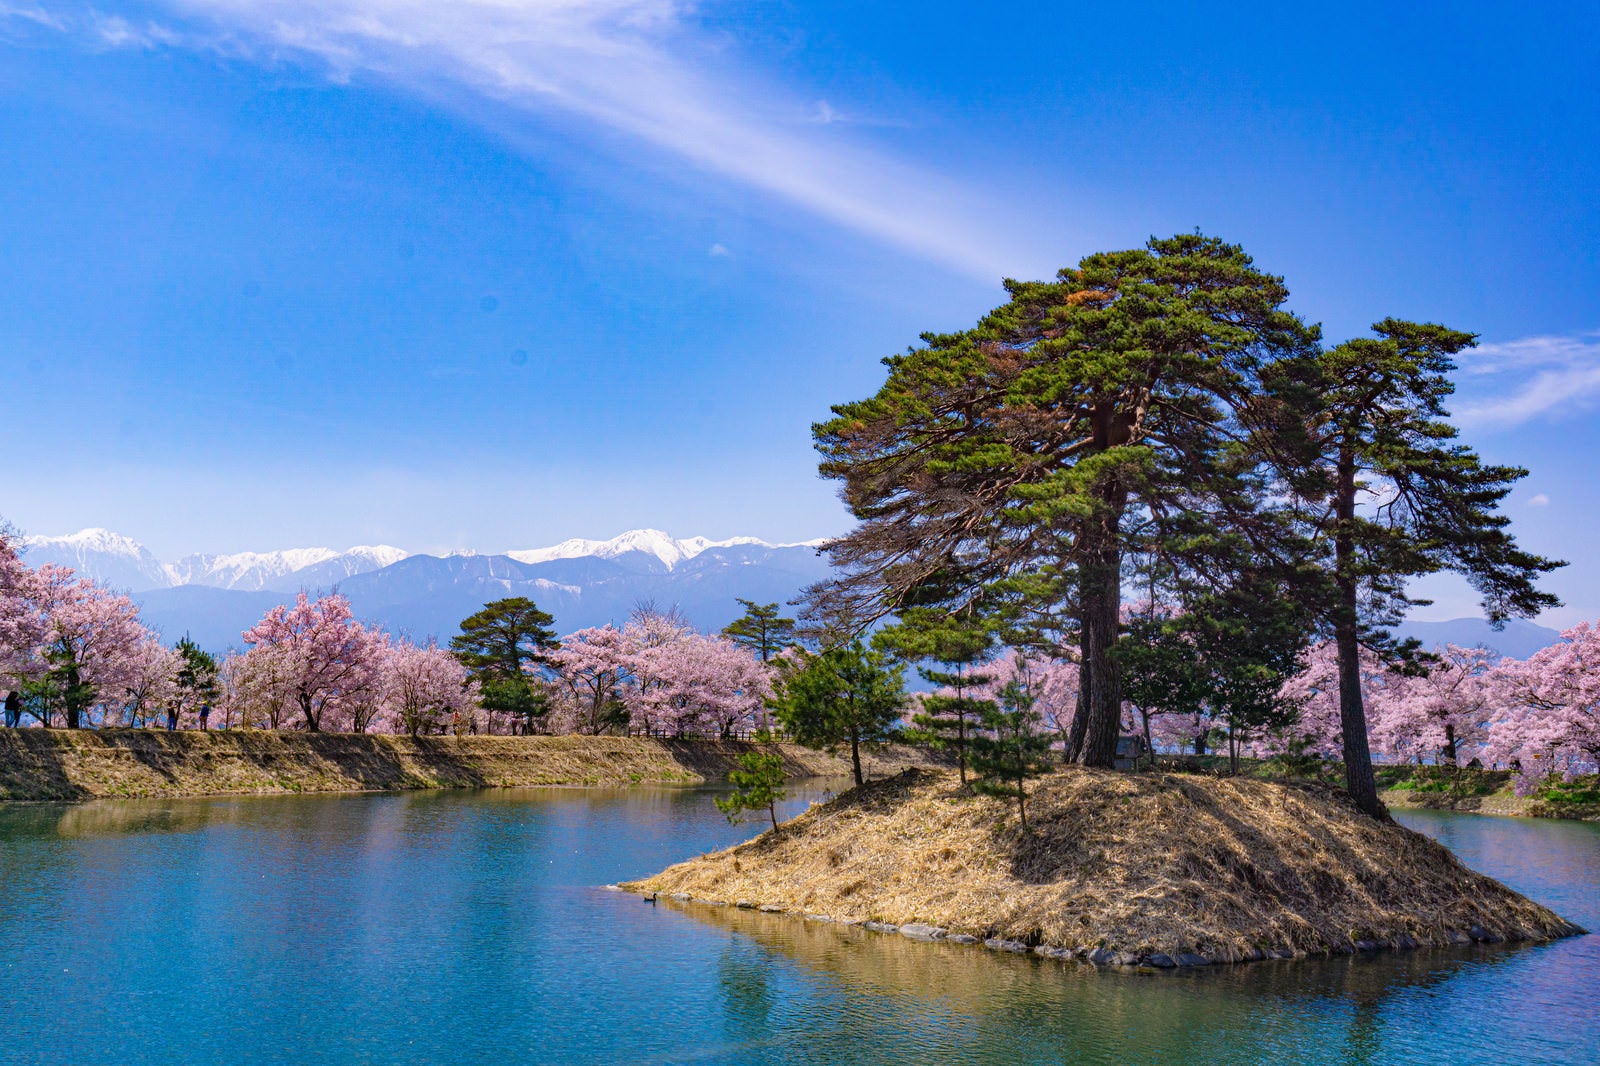 「池に浮かぶ小さな島の背景に立ち並ぶ桜と霞む残雪の山々」の写真